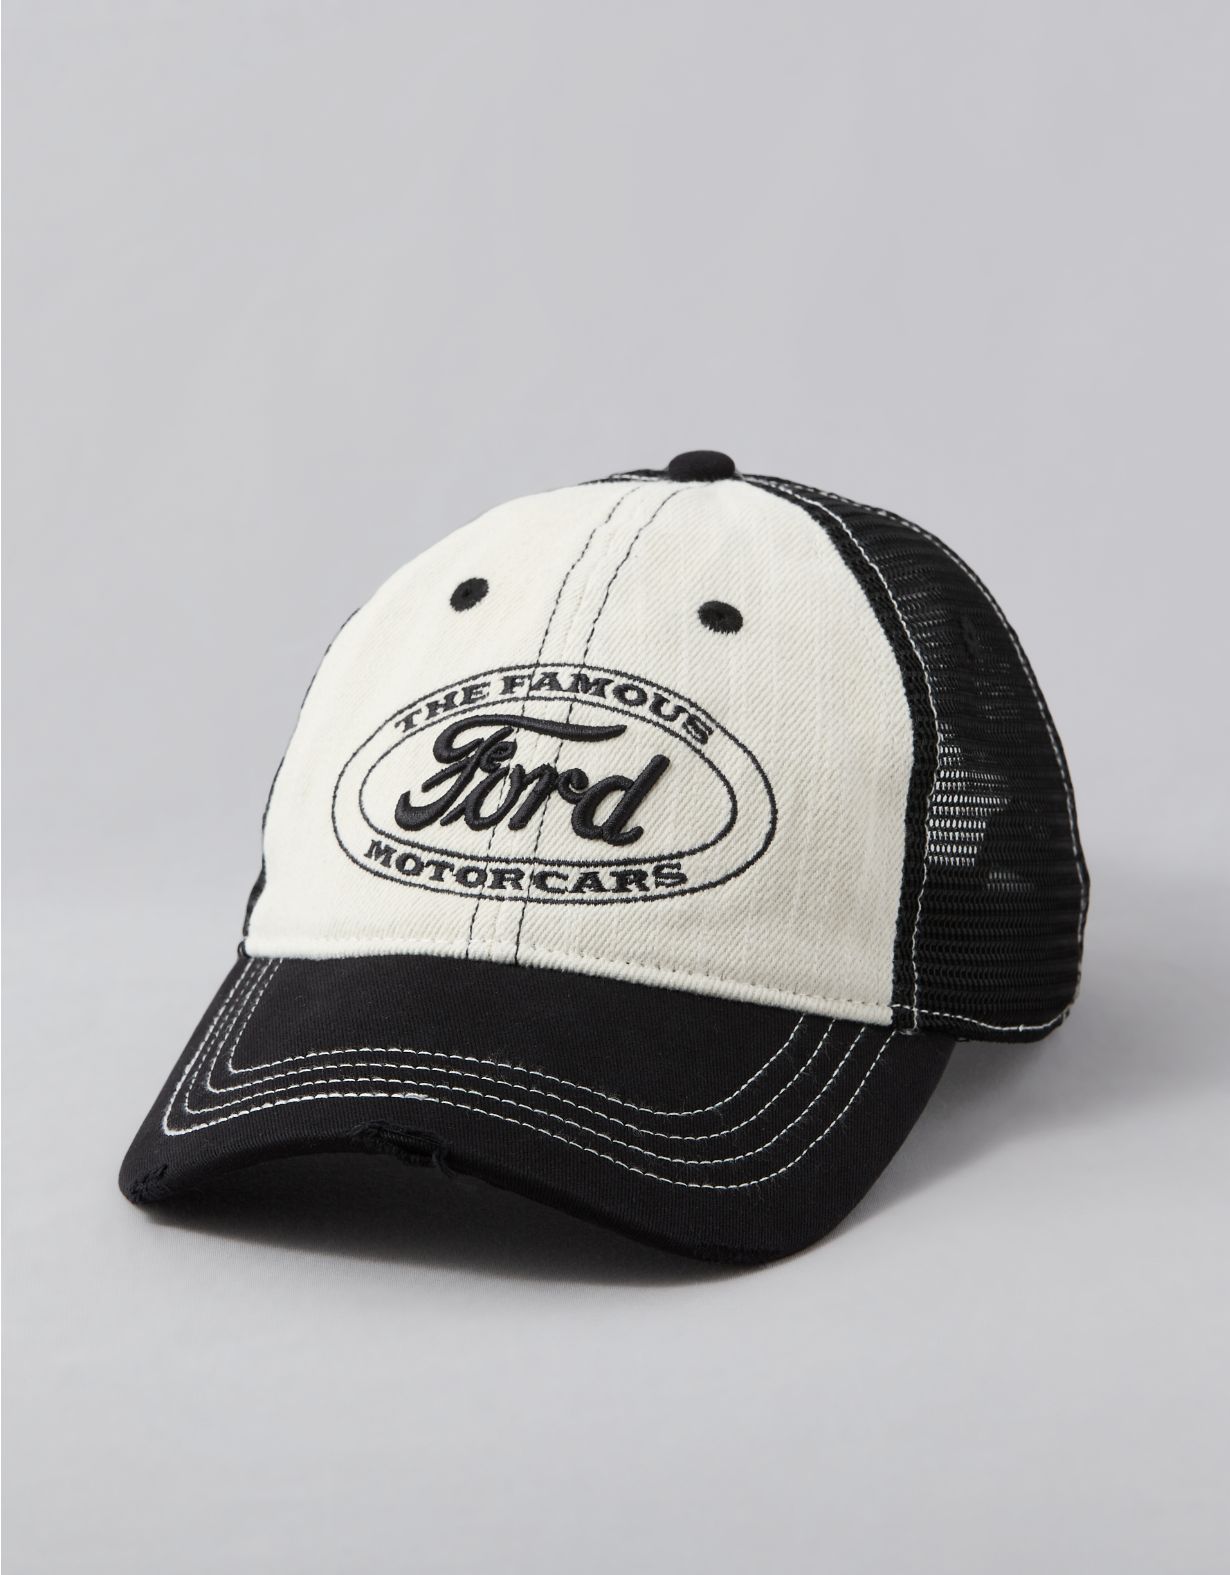 AE Ford Baseball Hat